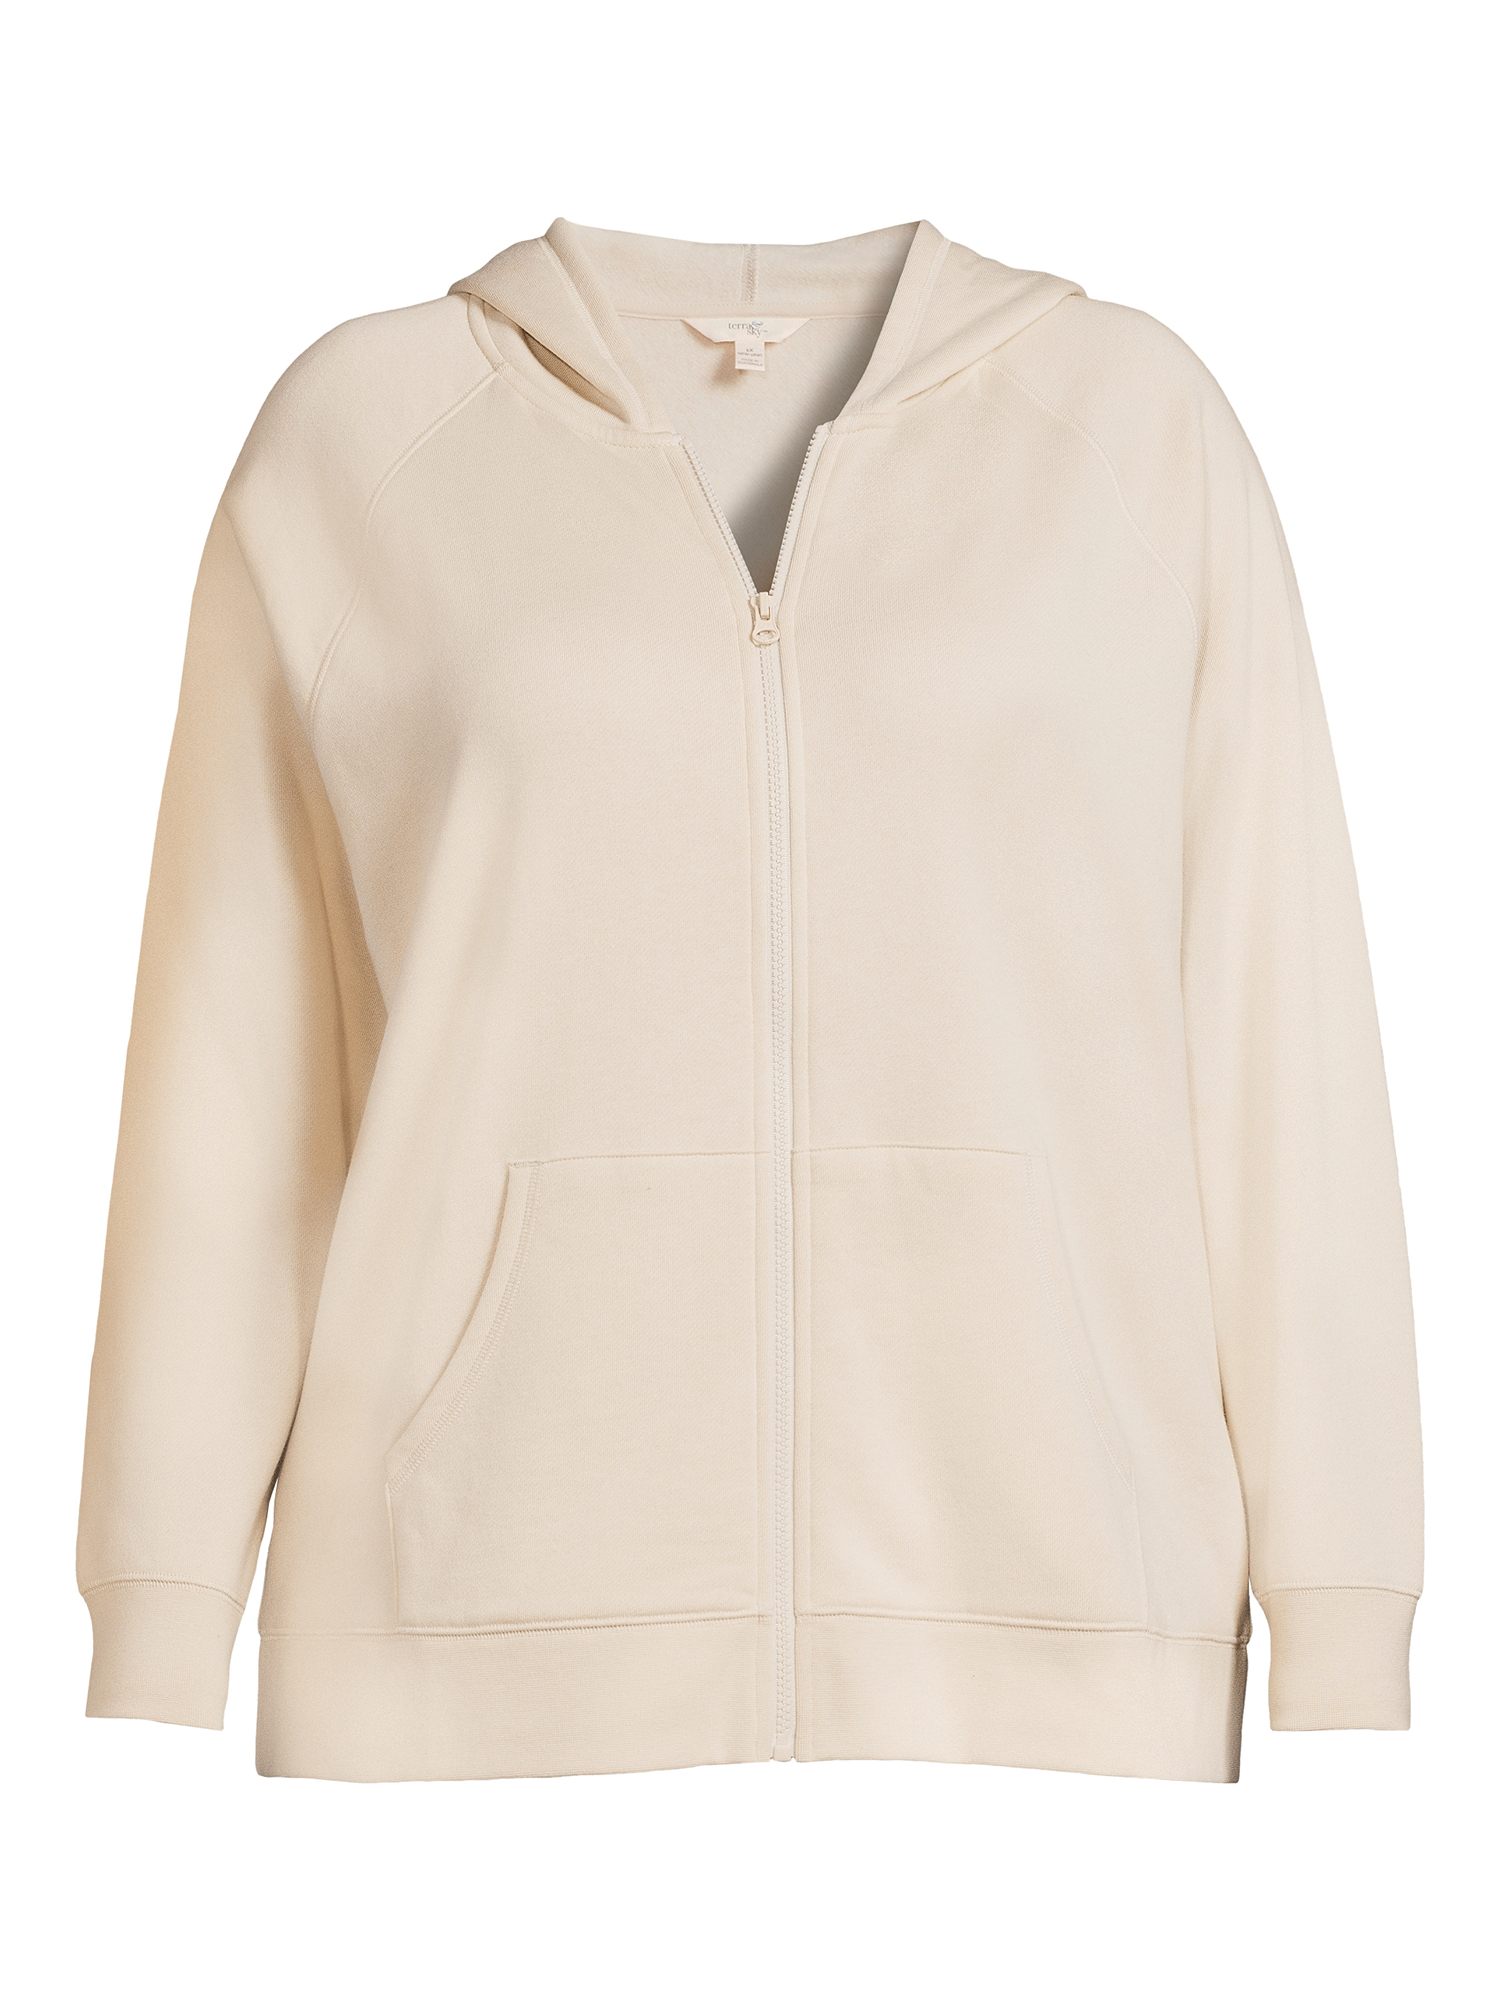 Terra & Sky Women's Plus Size Fleece Zip Up Hoodie - Walmart.com